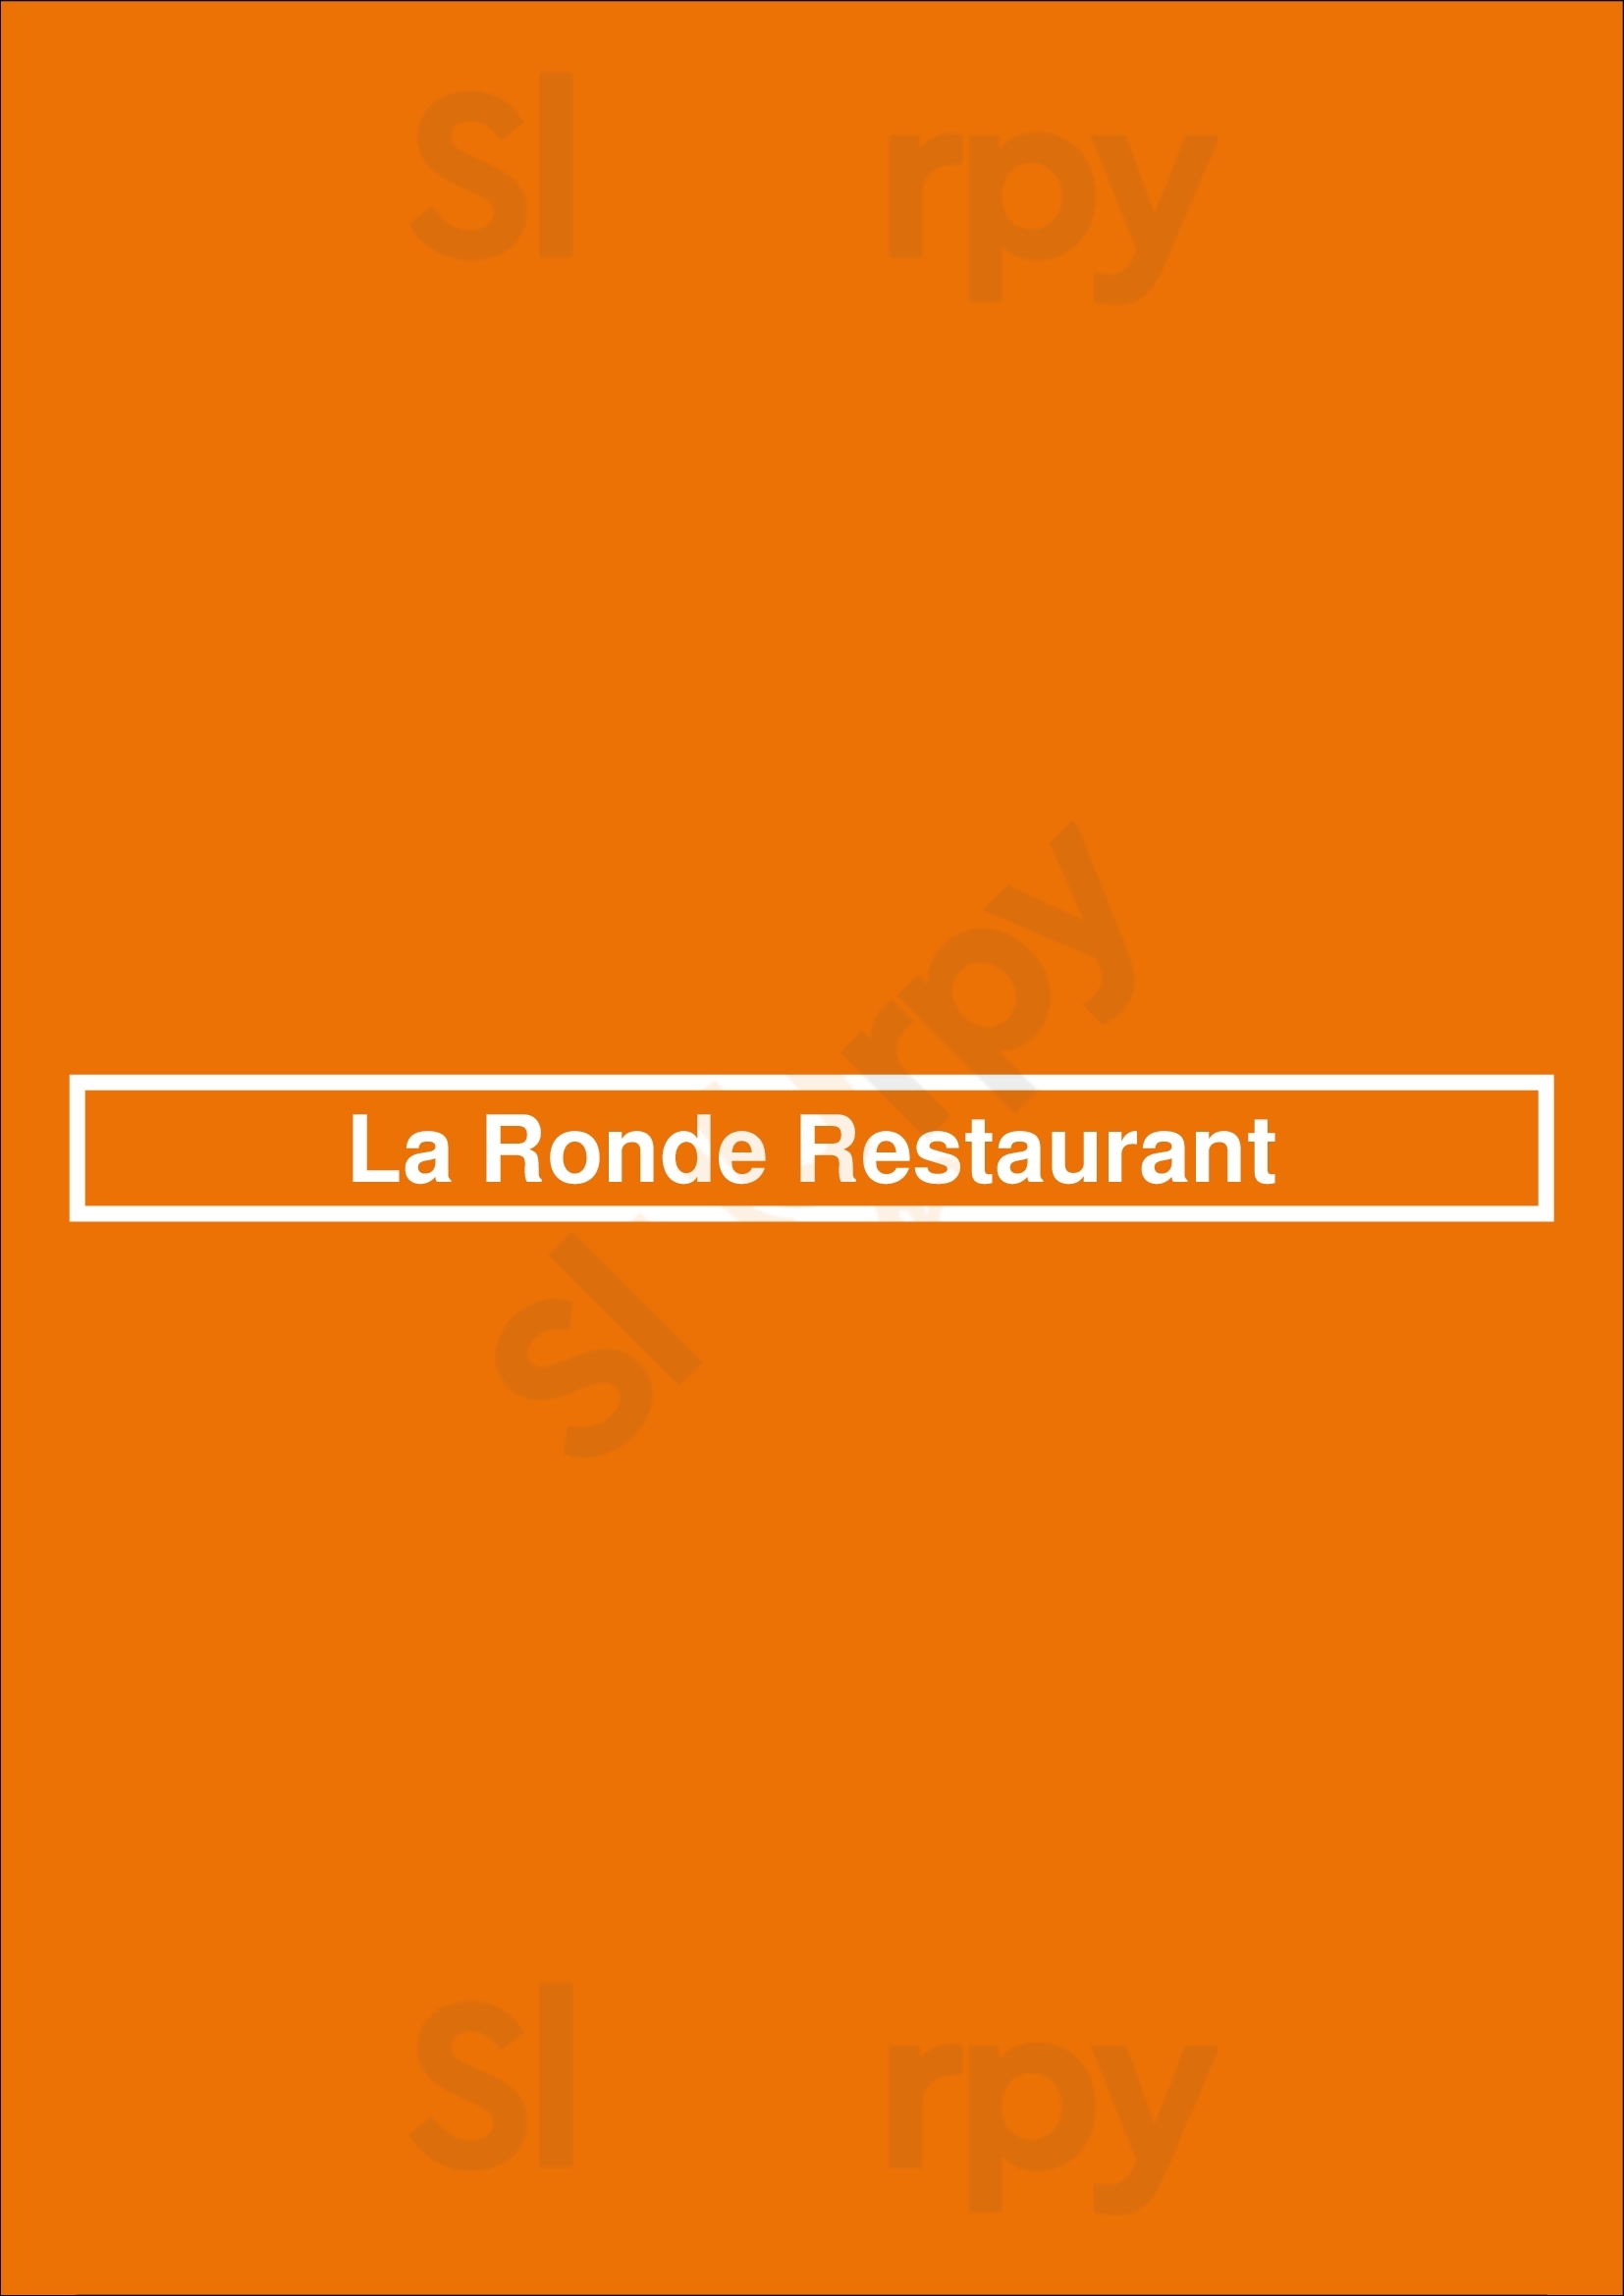 La Ronde Restaurant Edmonton Menu - 1